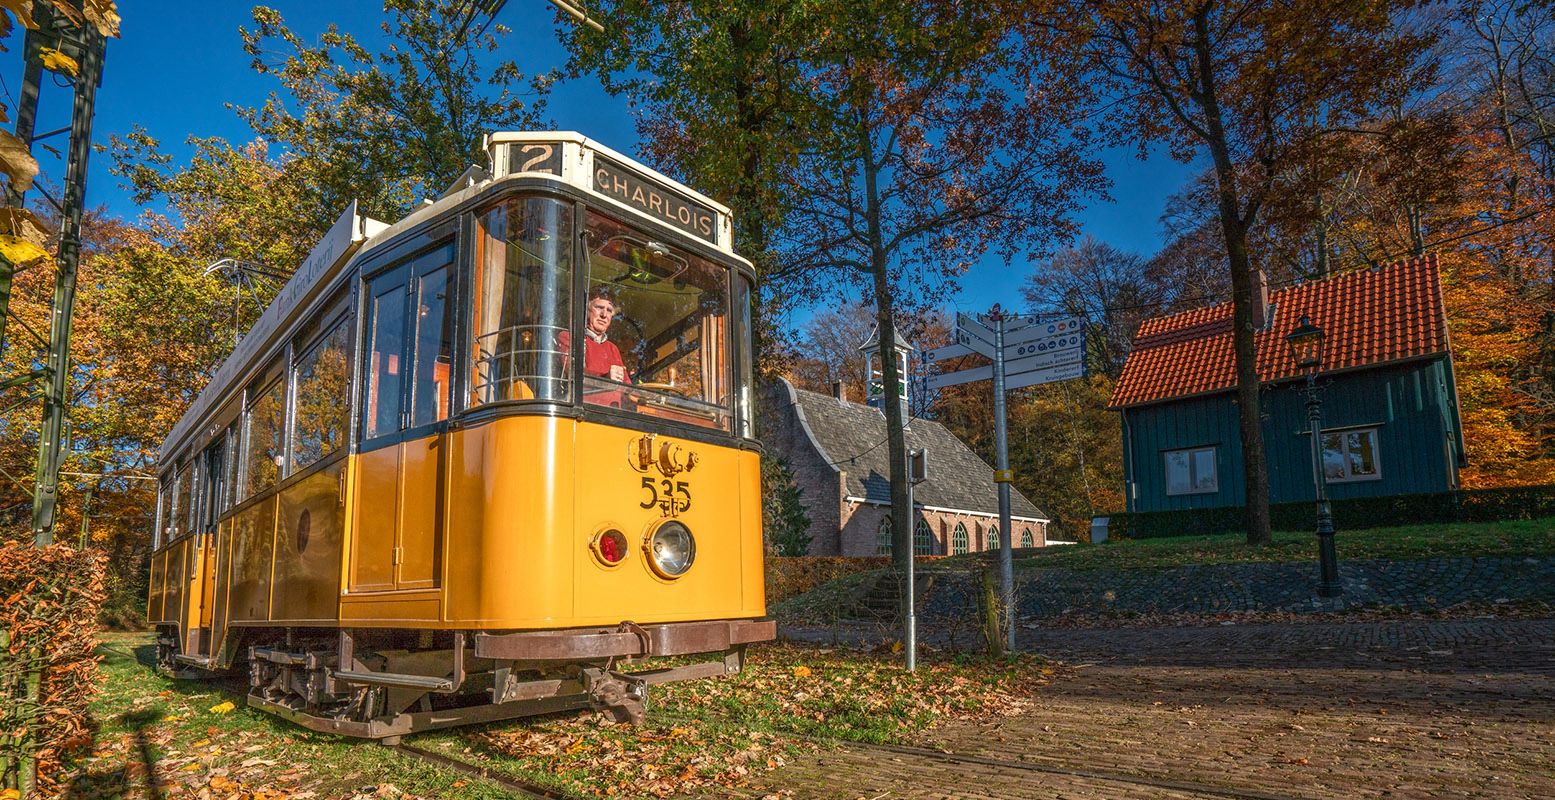 Bekijk het park vanuit de historische tram. Foto: Nederlands Openluchtmuseum @ Adrian Sommeling